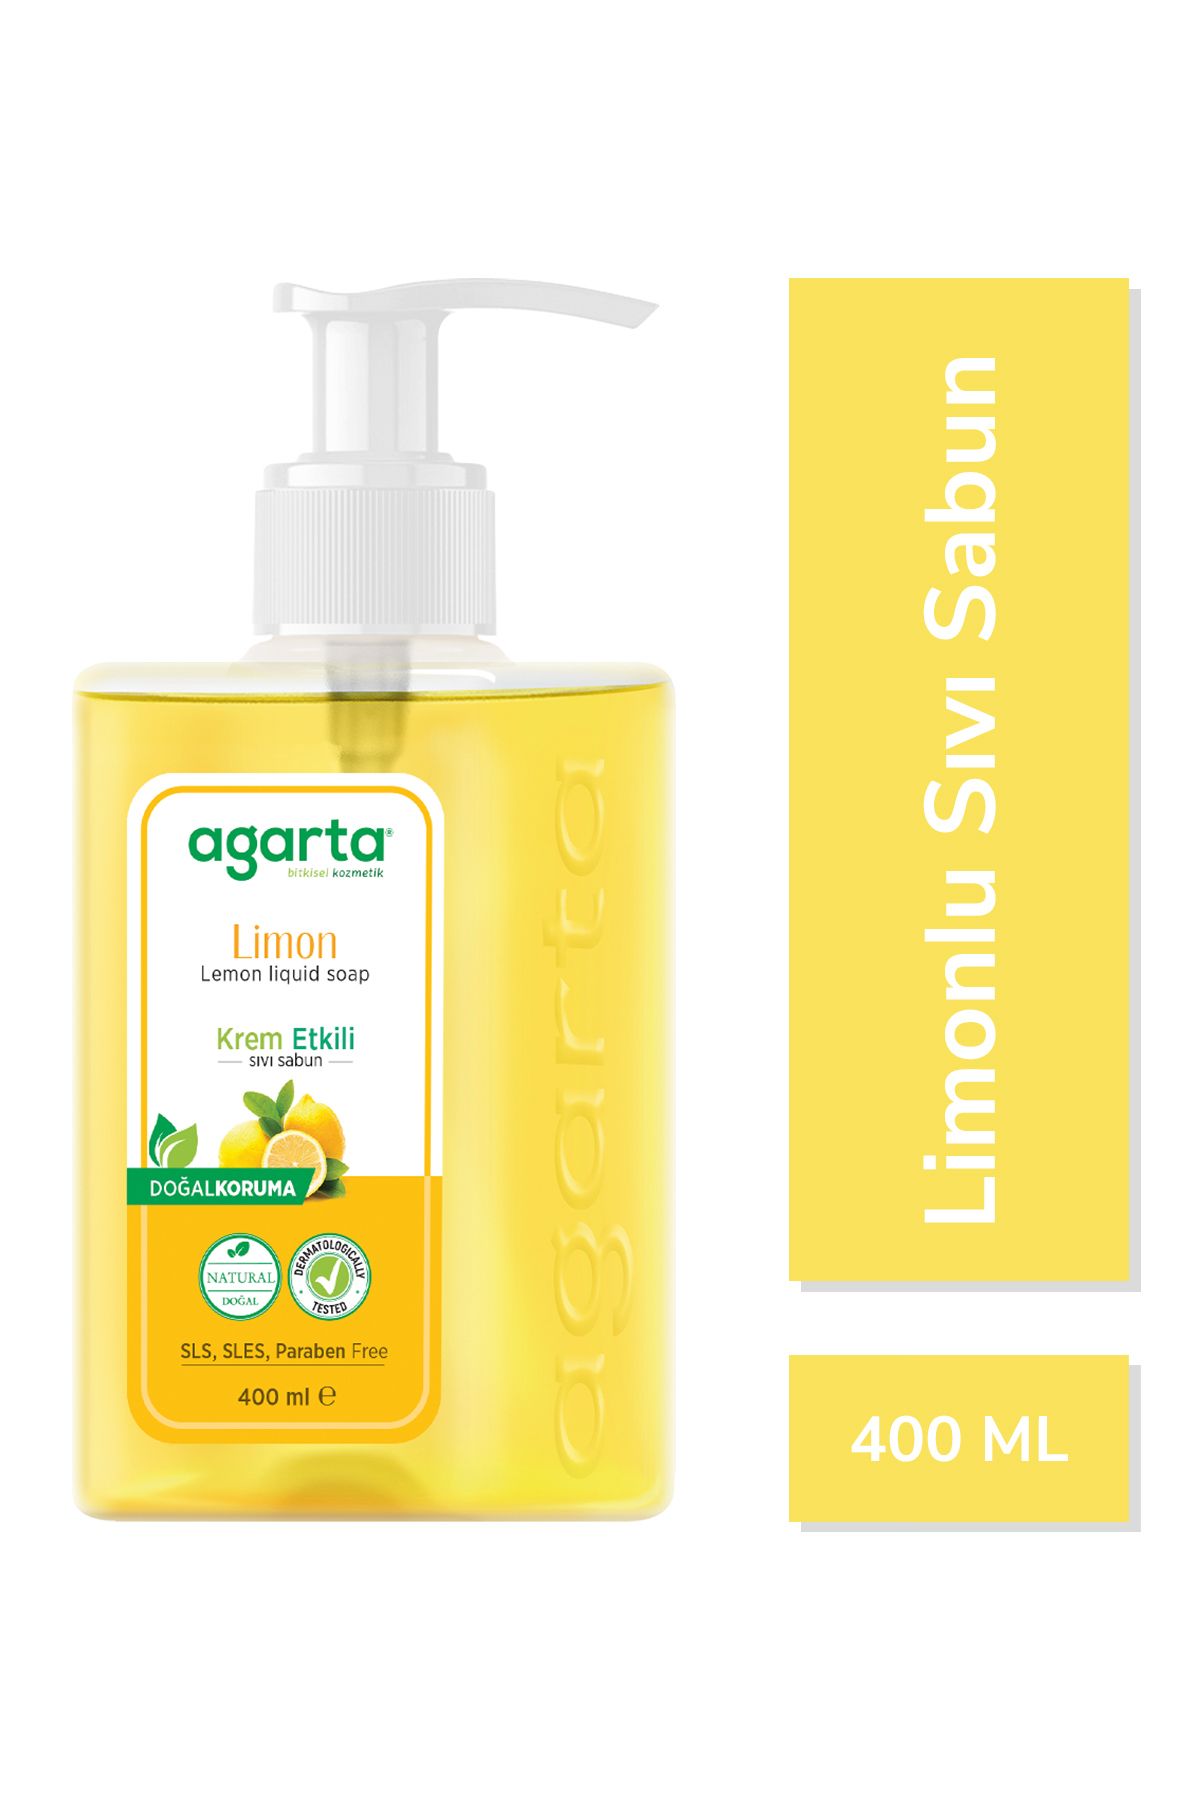 Agarta Doğal Krem Etkili Sıvı Sabun Limon 400 ml